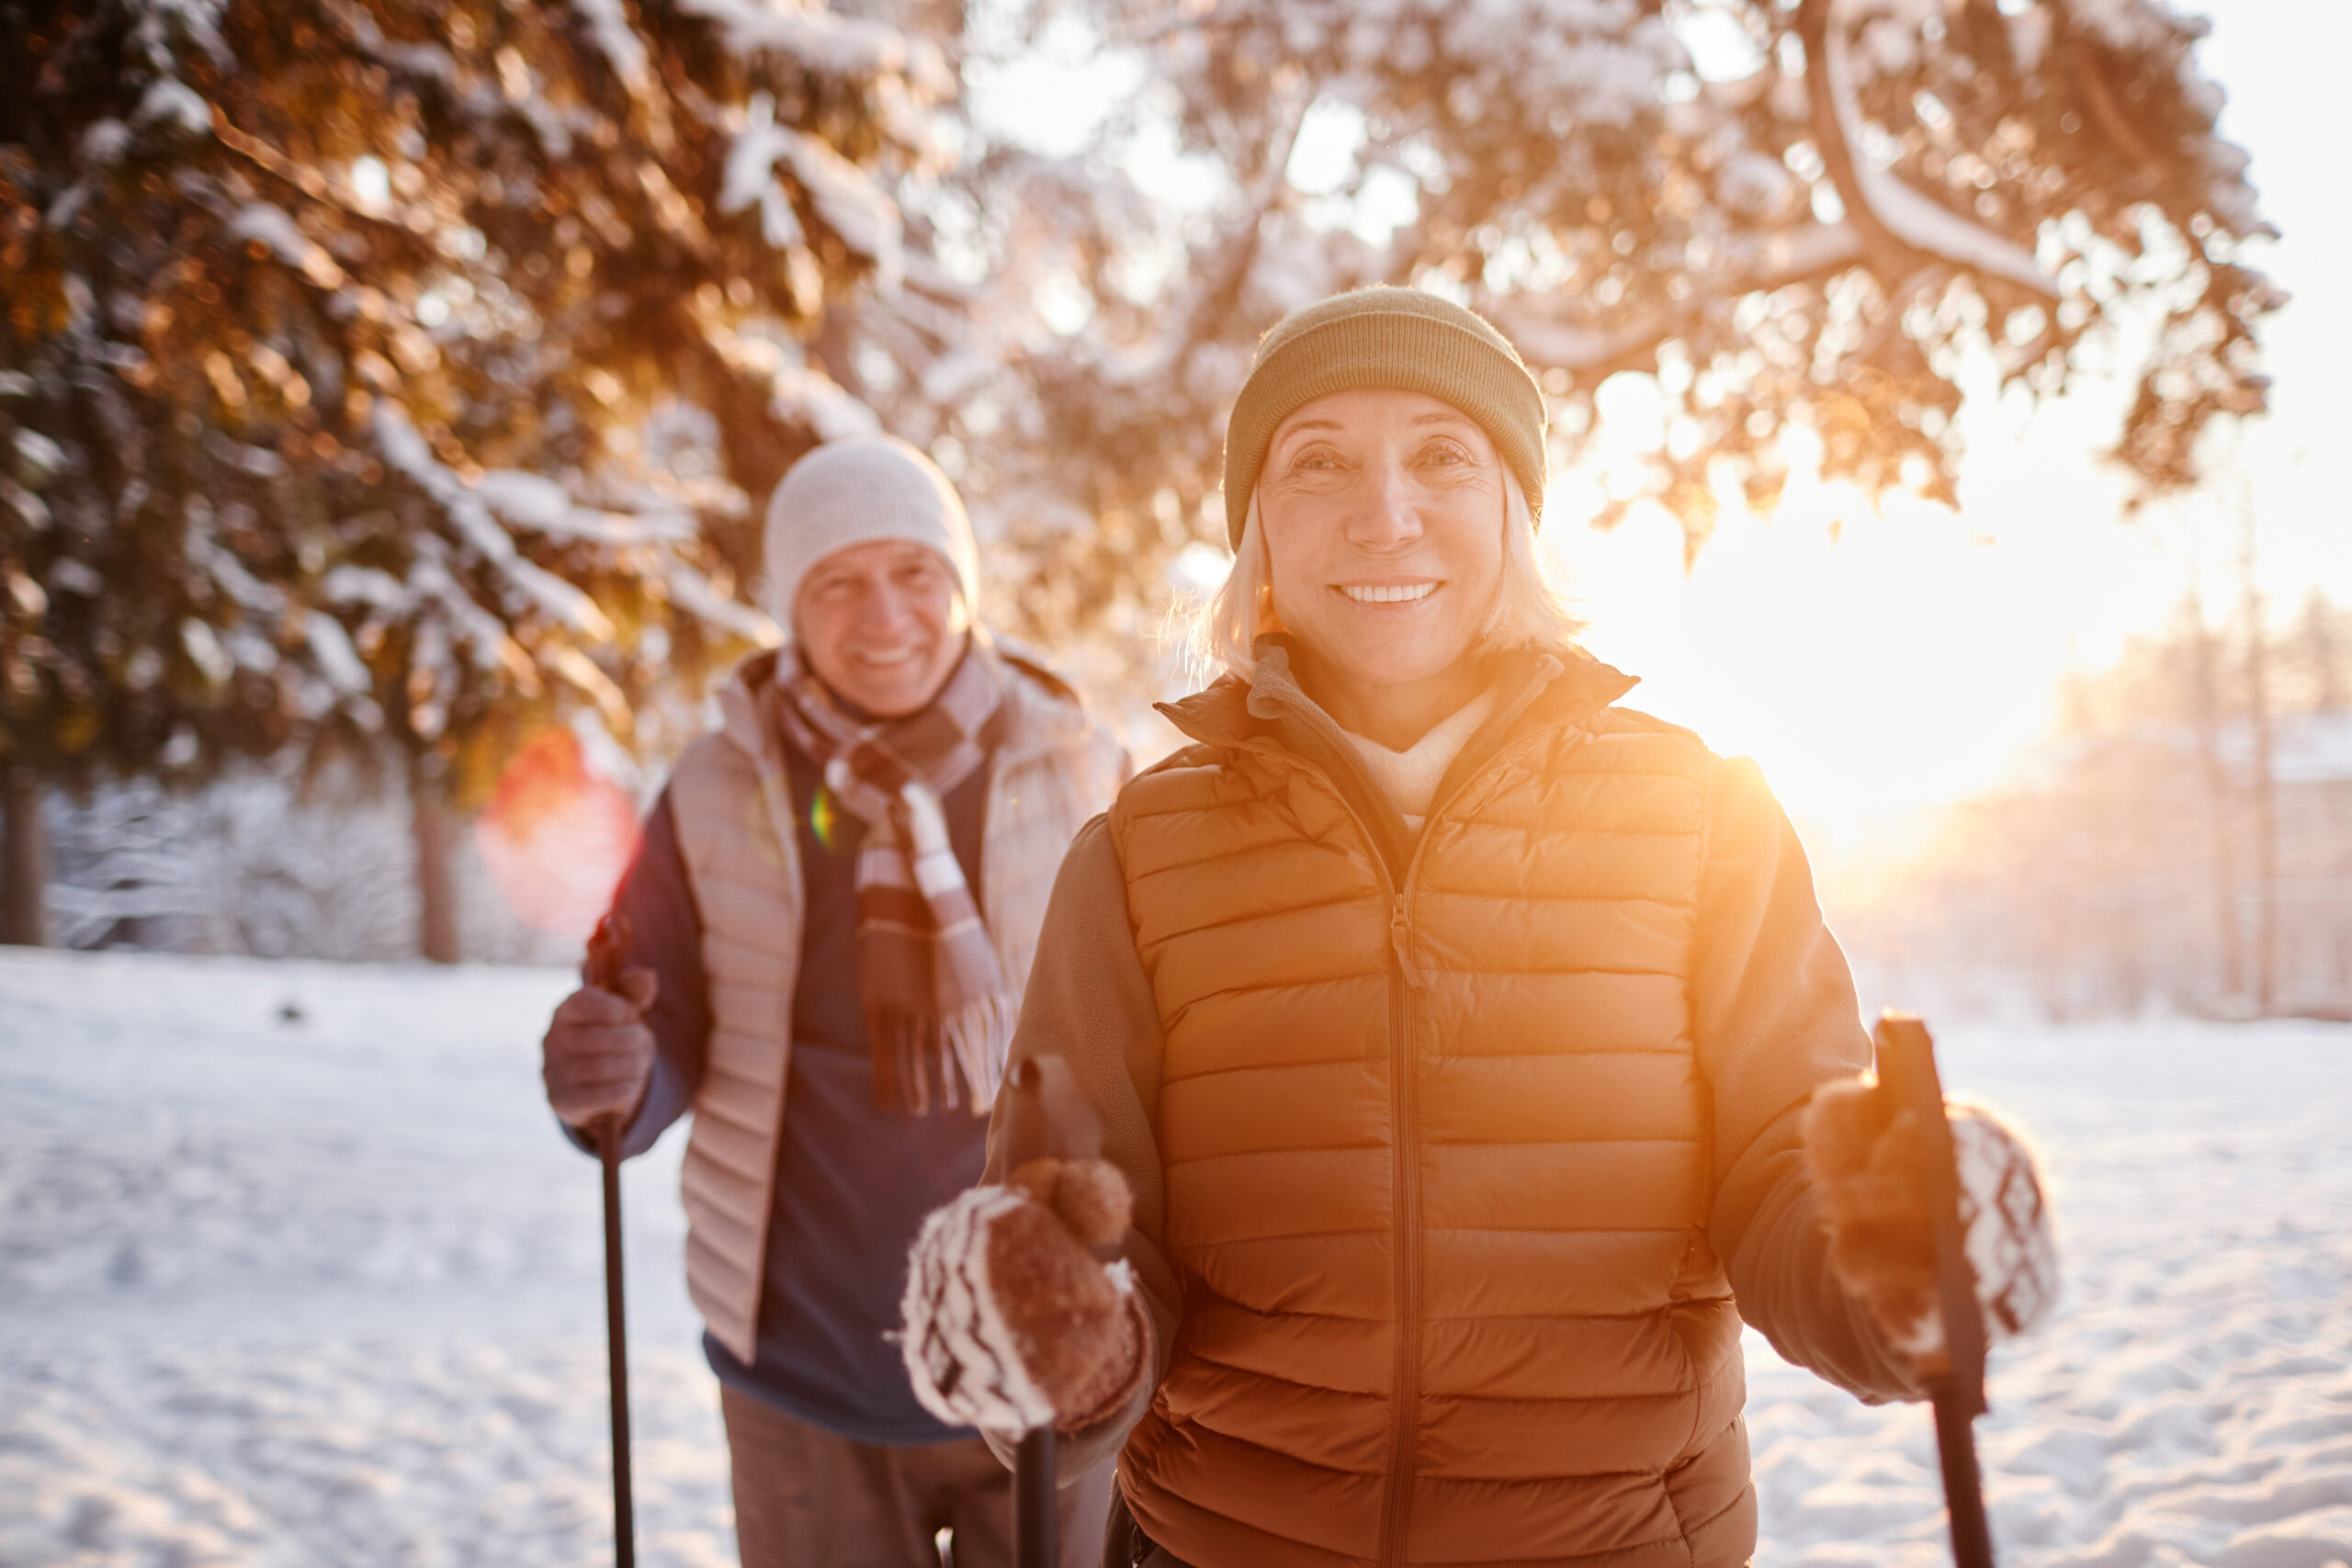 outdoor-winter-activities-true-connection-communities